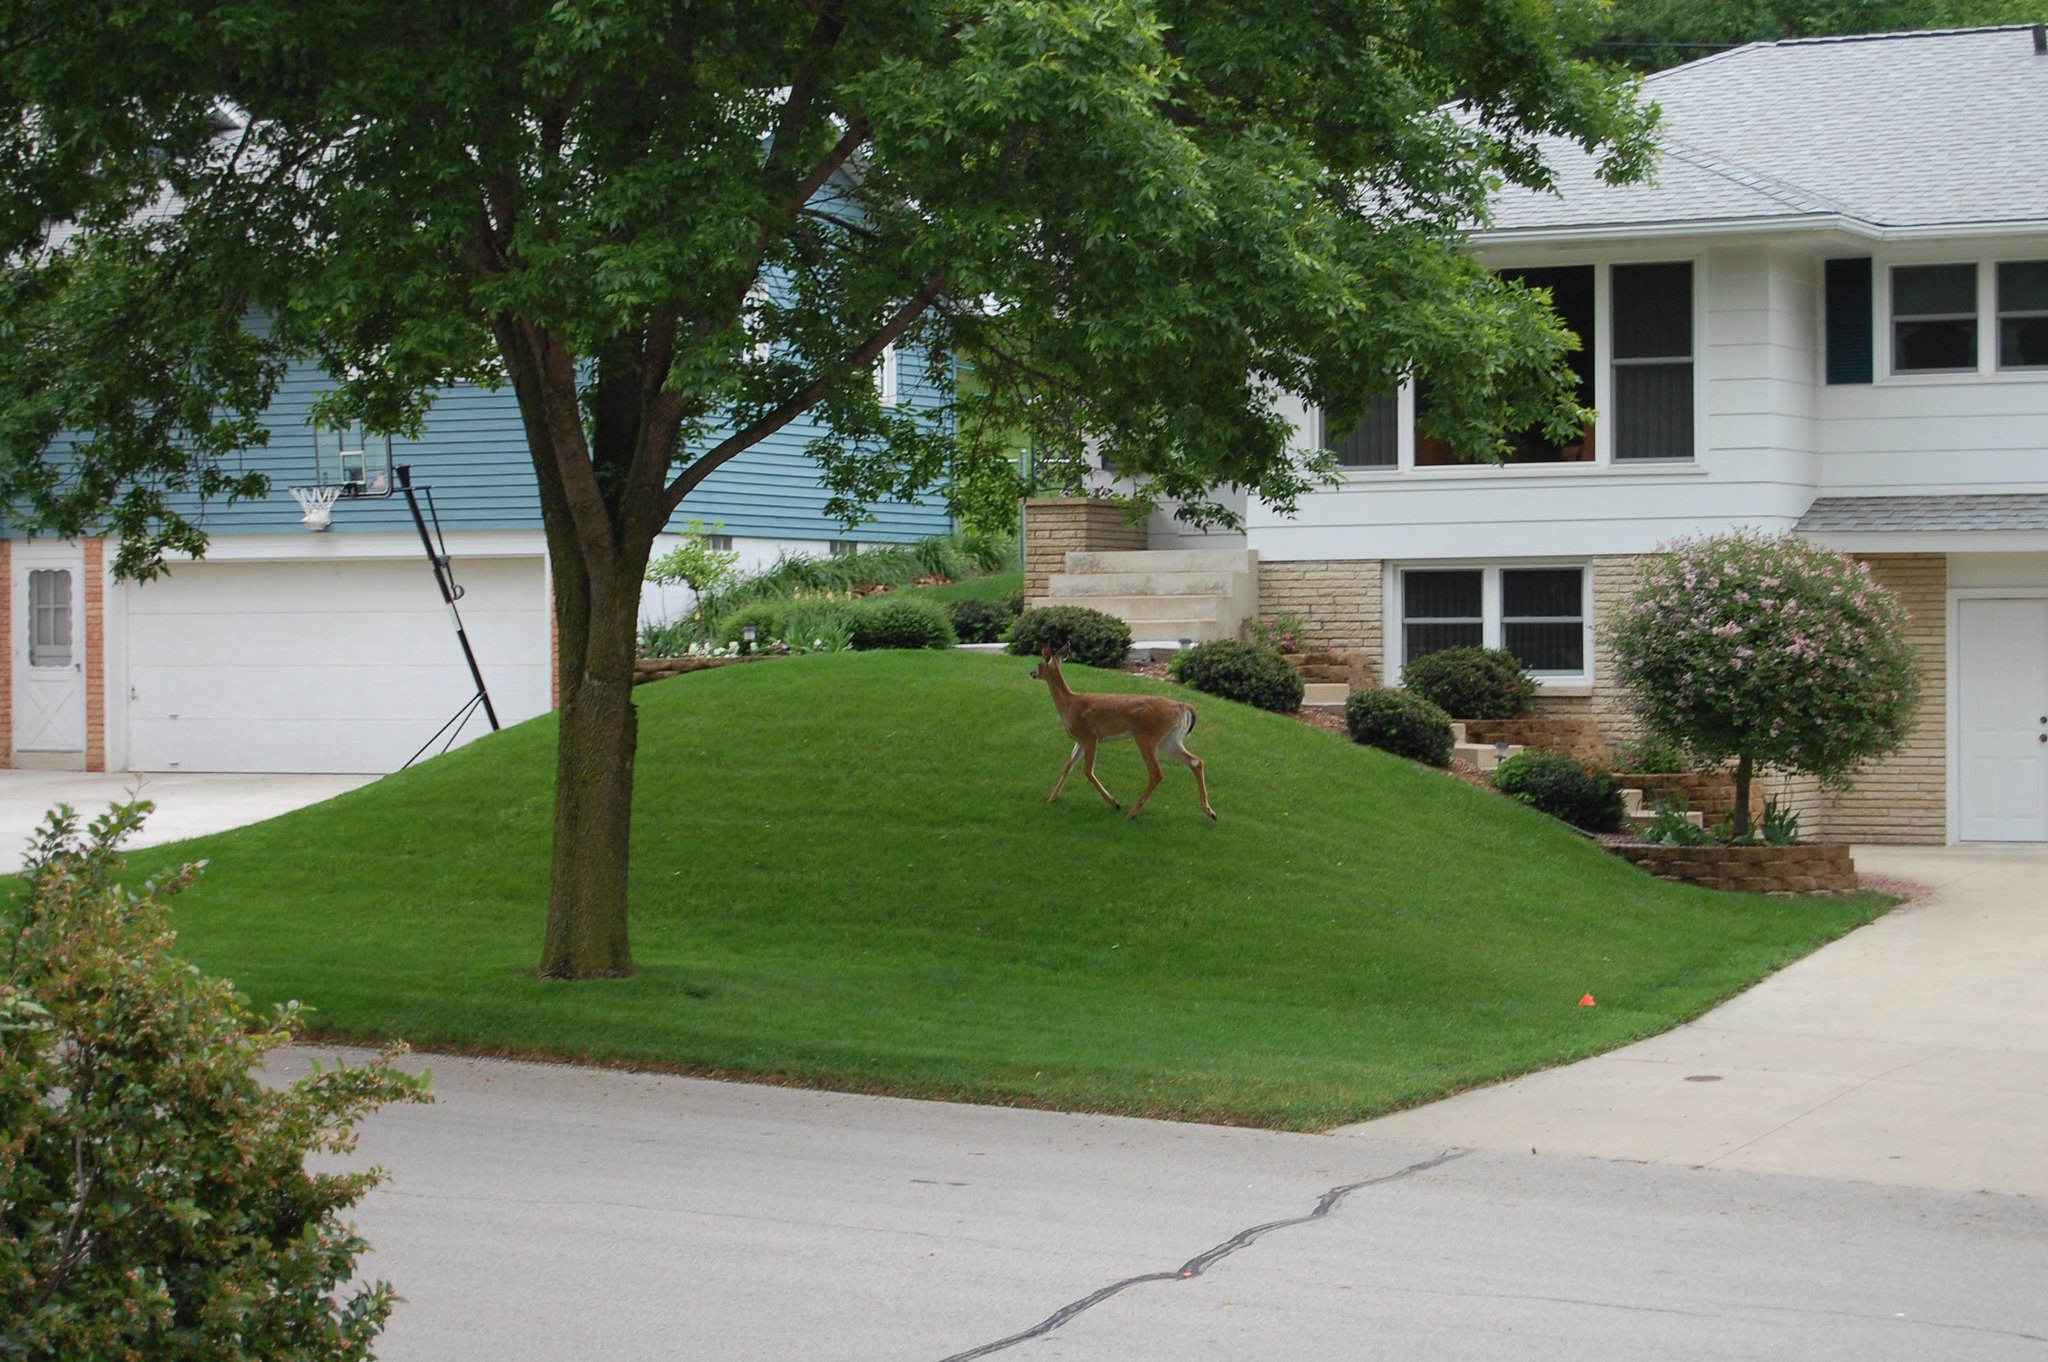 Deer in the suburbs